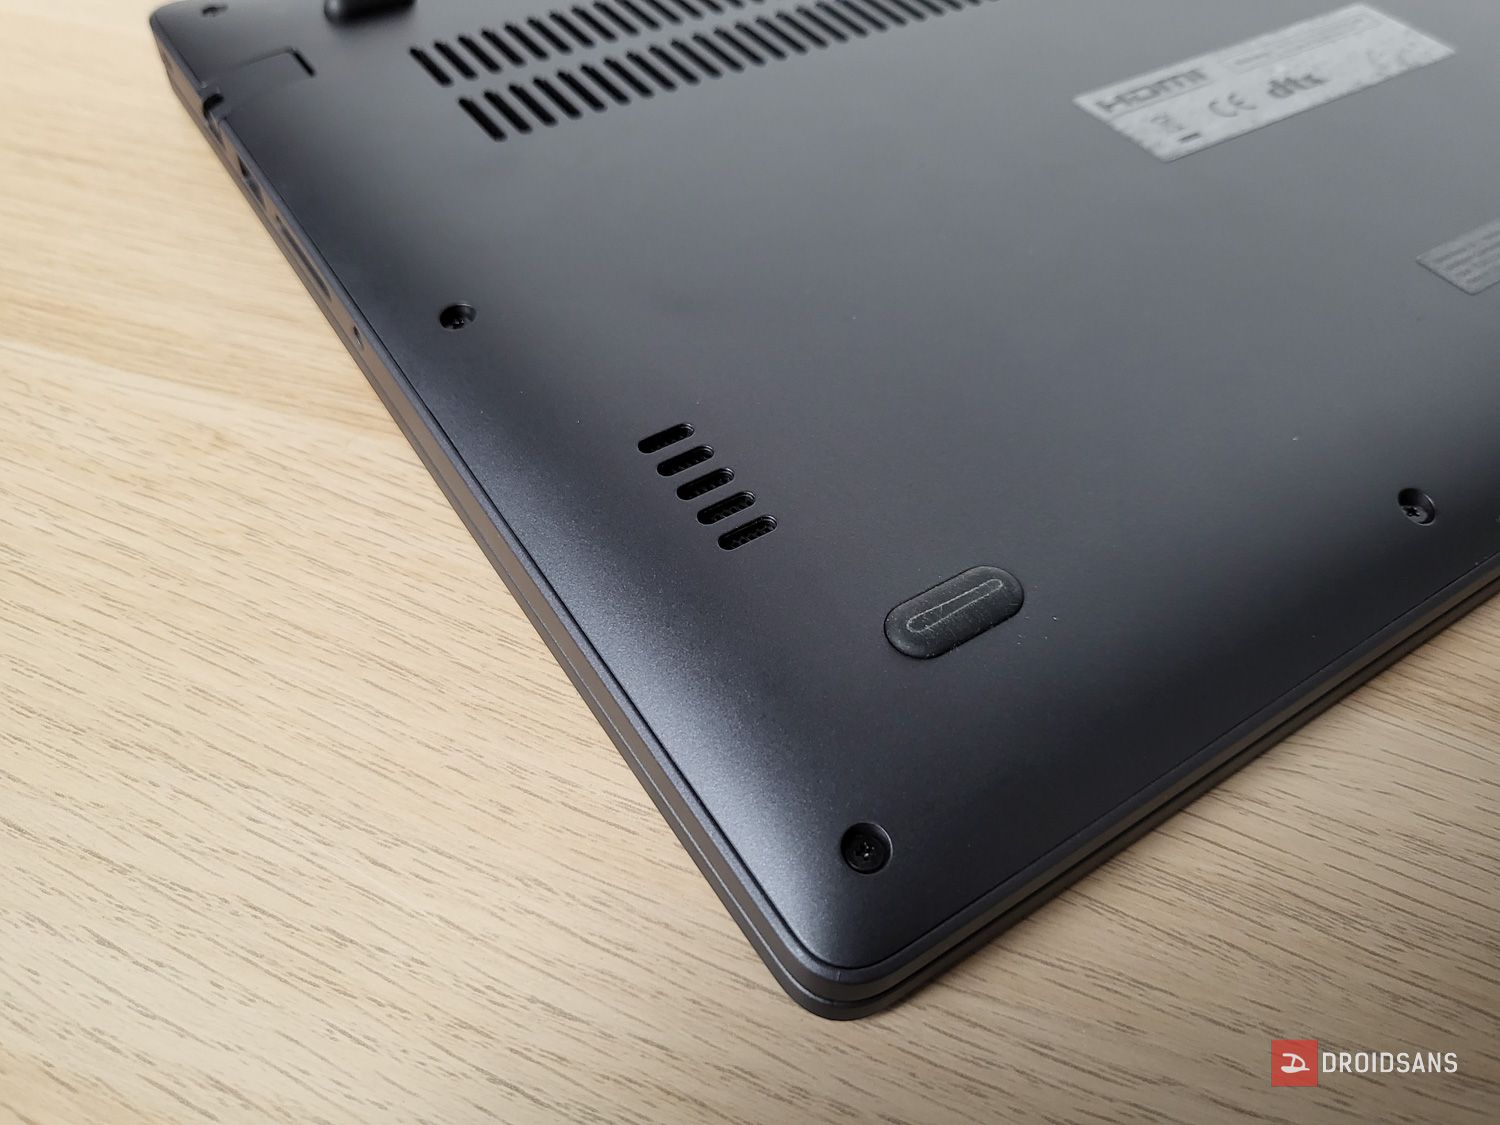 Review | รีวิว RedmiBook 15 โน้ตบุ๊คทำงานสุดคุ้ม จอใหญ่ ดีไซน์เรียบหรู ราคาเริ่มต้น 13,990 บาท